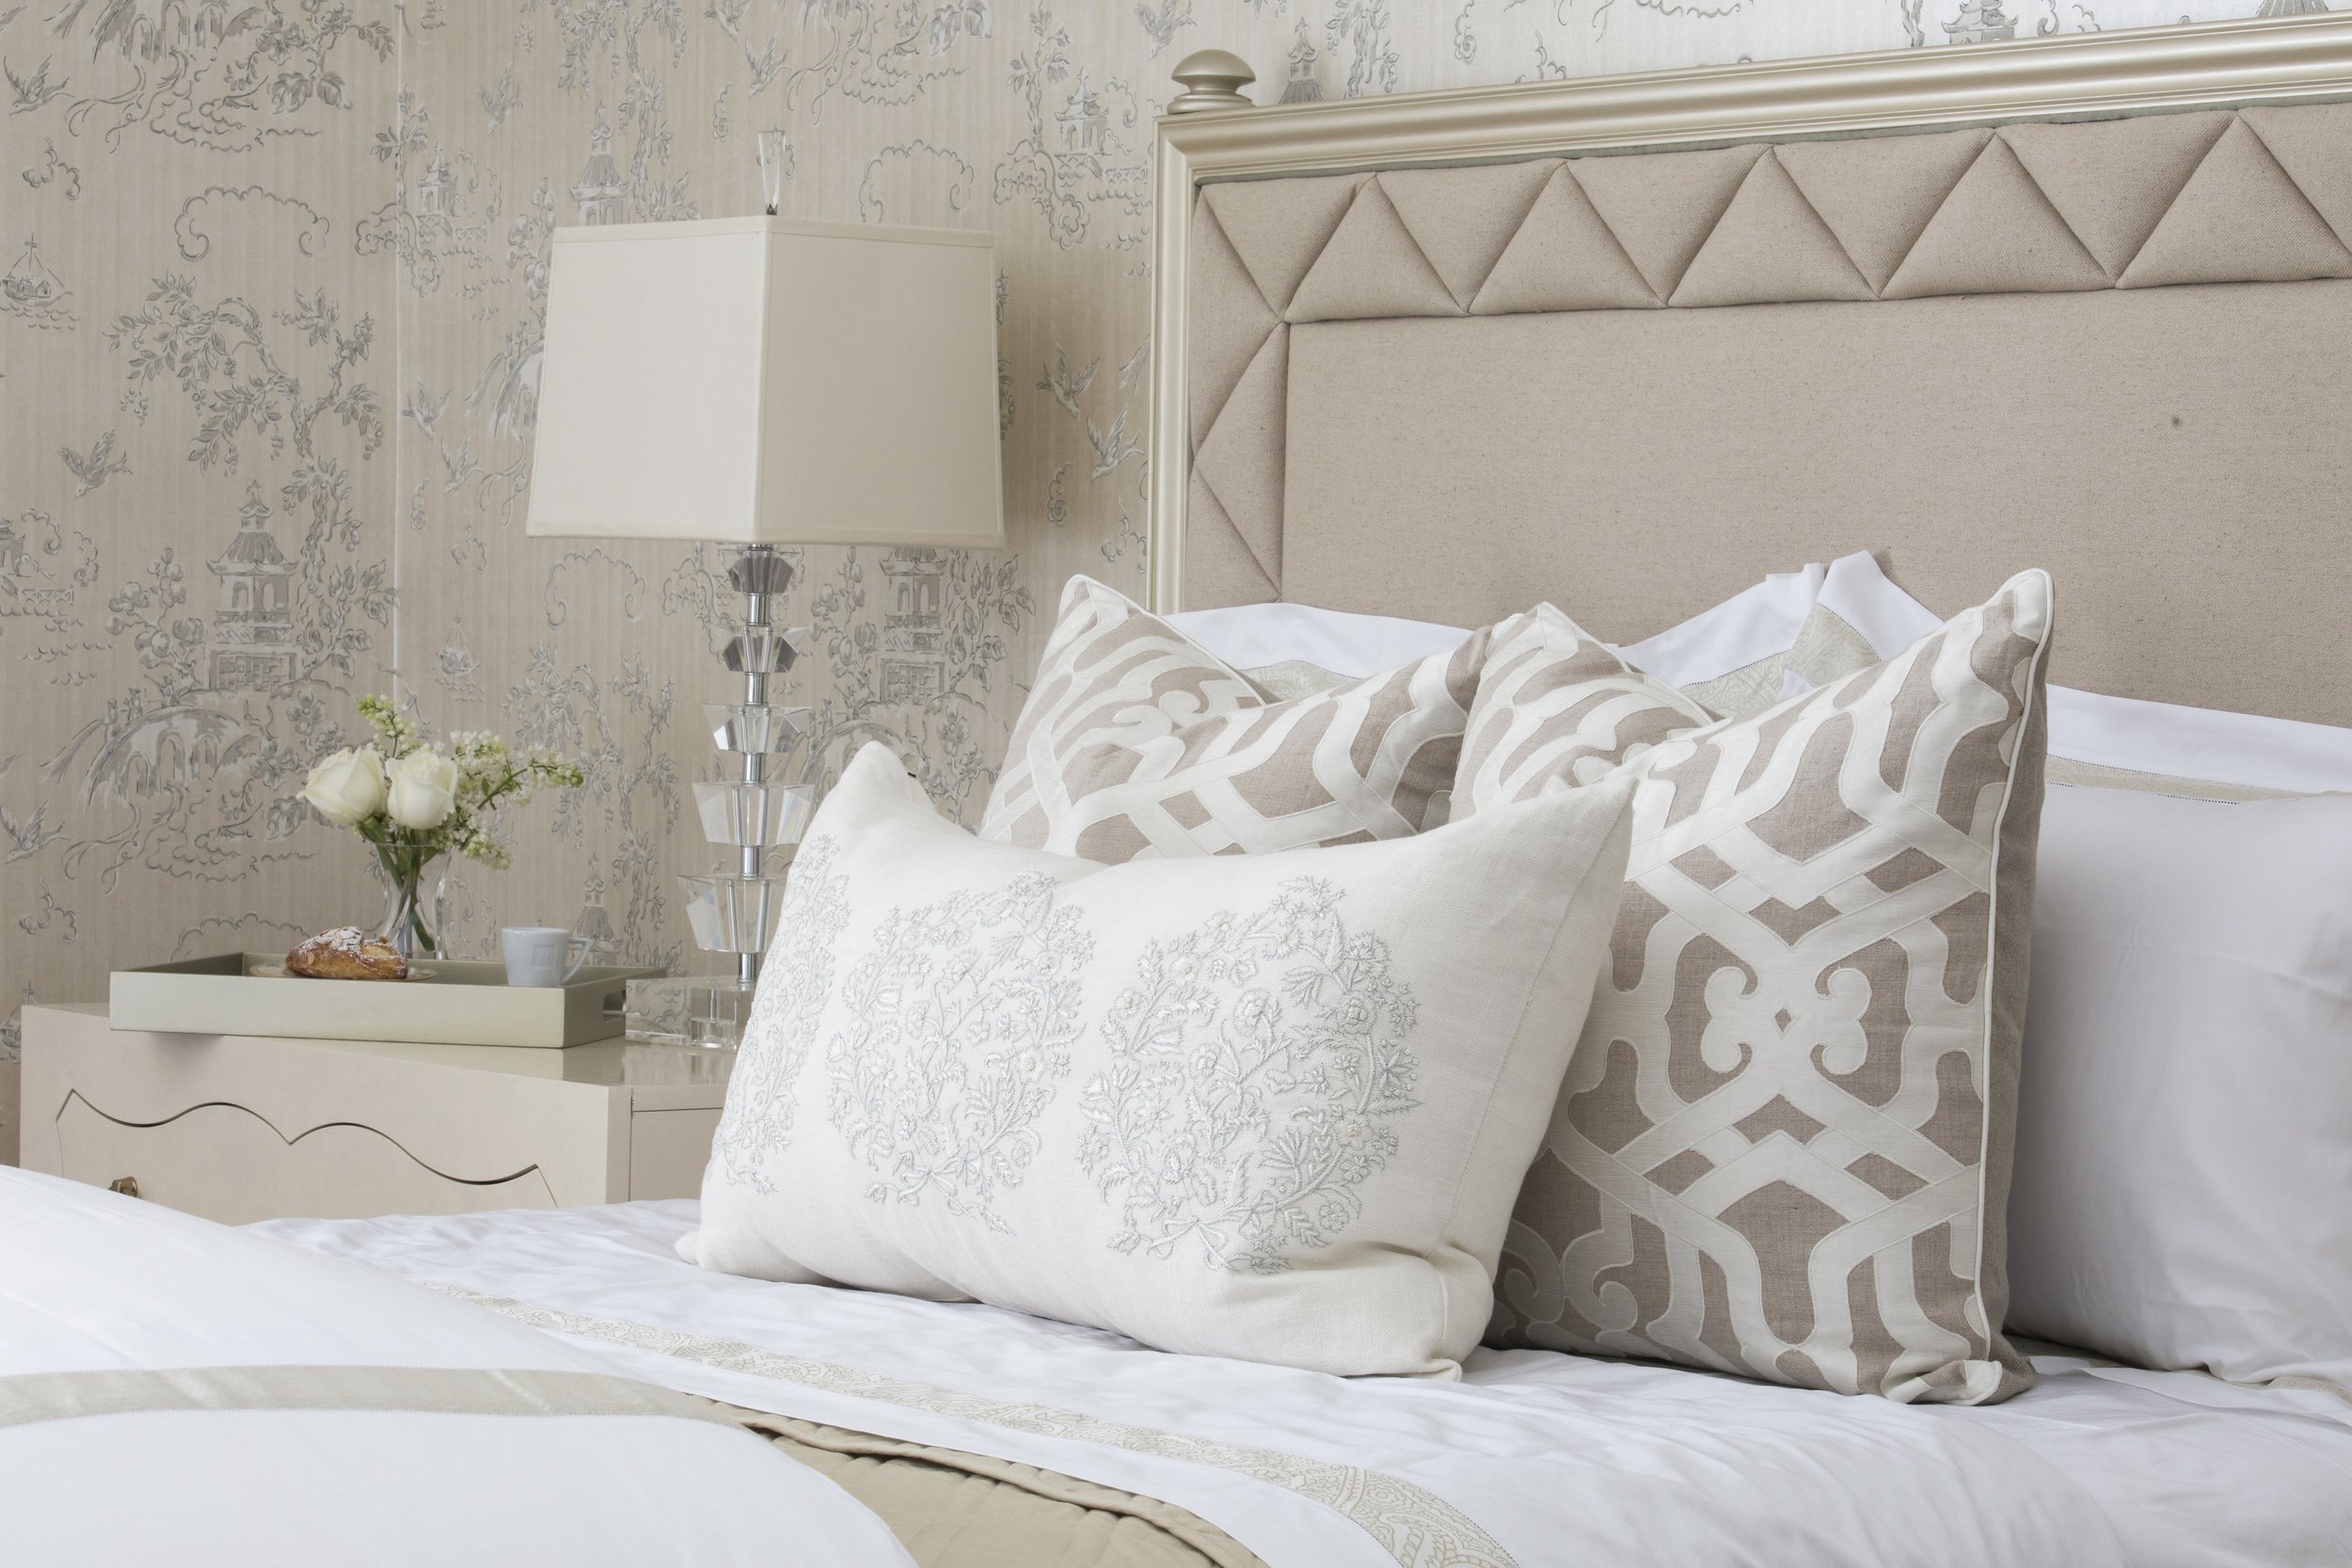 62-bedroom-bedding-pillow-headboard-detail-cream-texture-rinfret-neoclassical-greenwich-connecticut.JPG